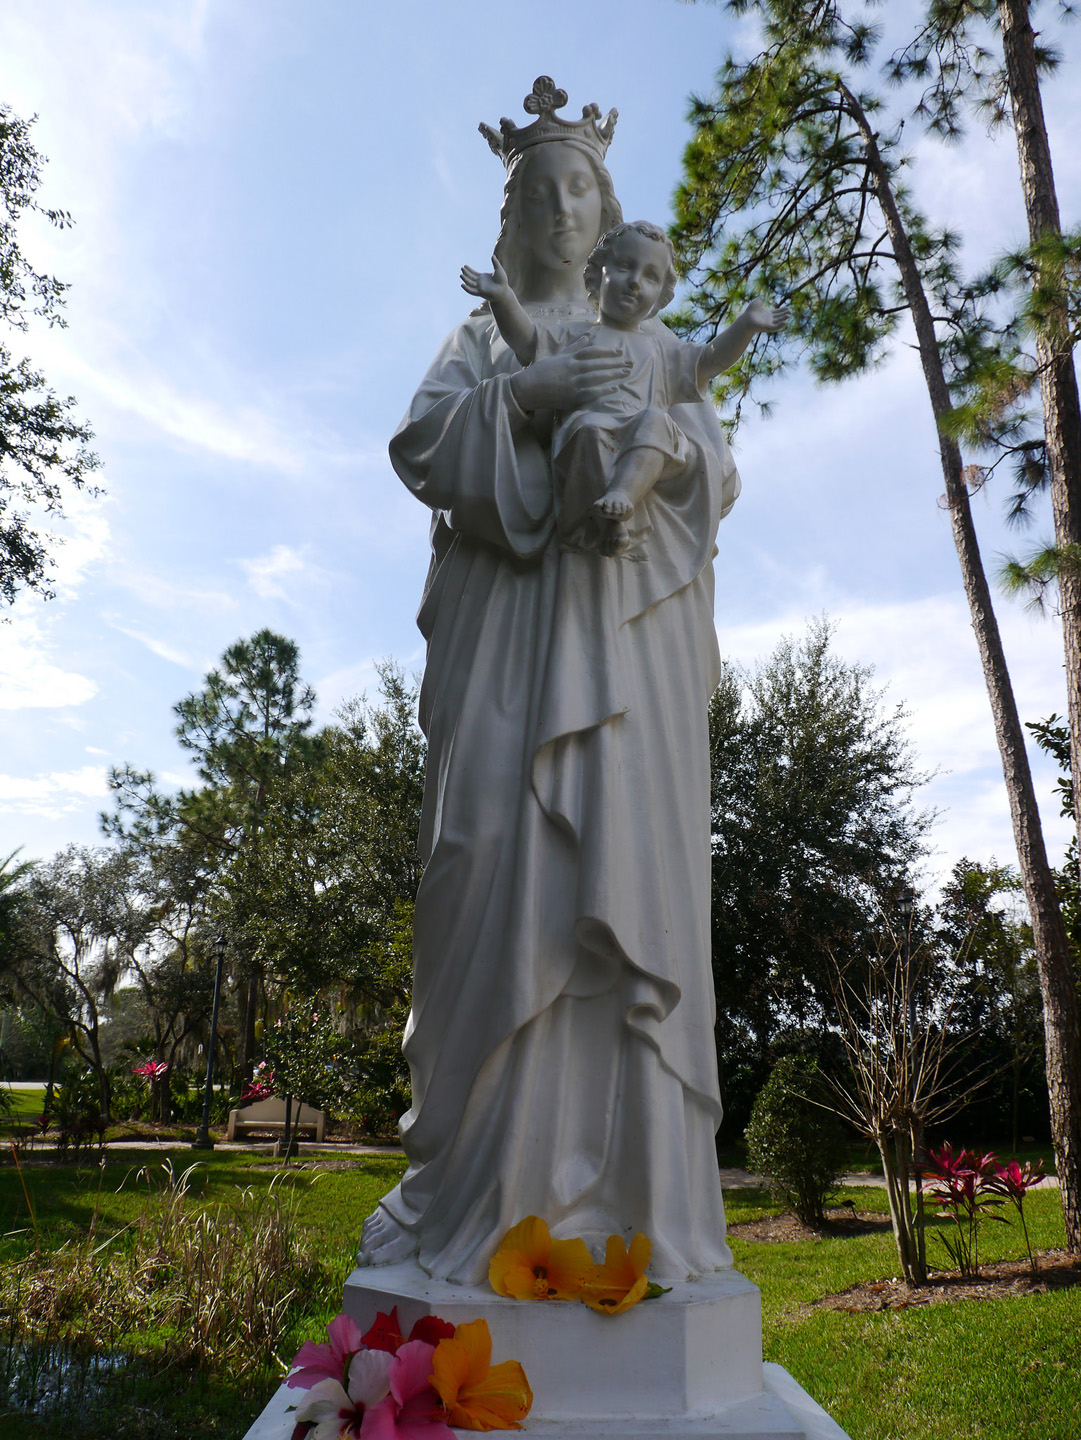 Orlando es, sin dudas, uno de los destinos turísticos más populares en los Estados Unidos, básicamente por ser el hogar de Disney World, y otros parques temáticos y atracciones más o menos del mismo tipo. Pero esta ciudad de la Florida es también la sede de la Basílica del Santuario Nacional de María, Reina del Universo.